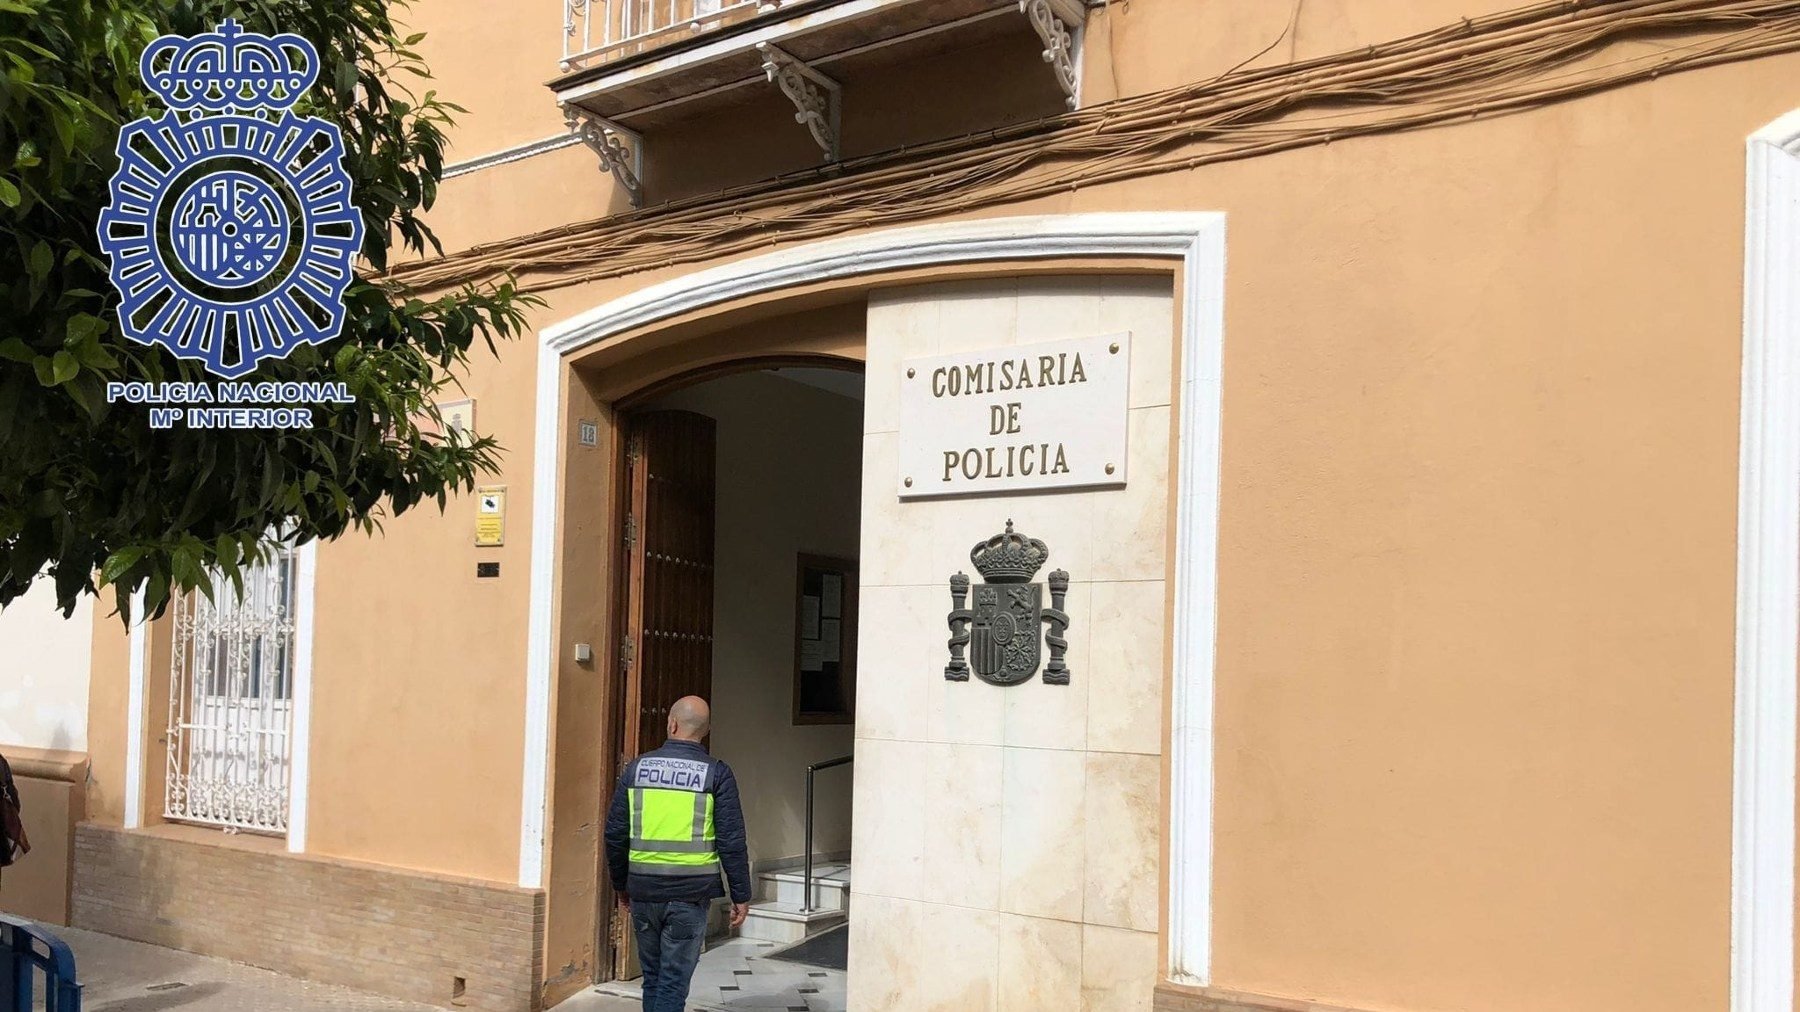 Comisaría de la Policía Nacional en Morón de la Frontera, Sevilla (PN).